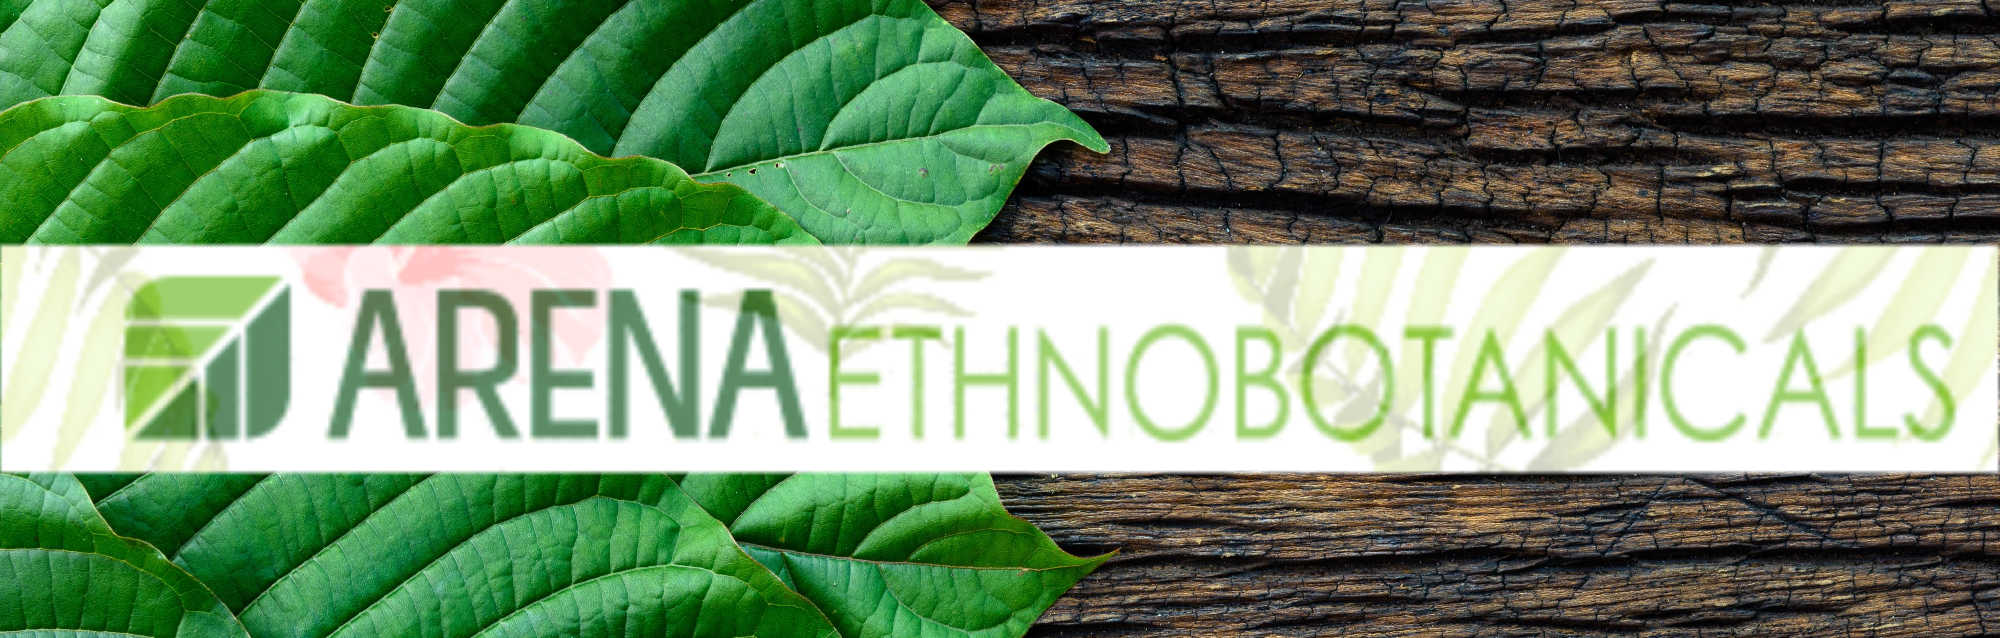 image of arena ethnobotanicals logo